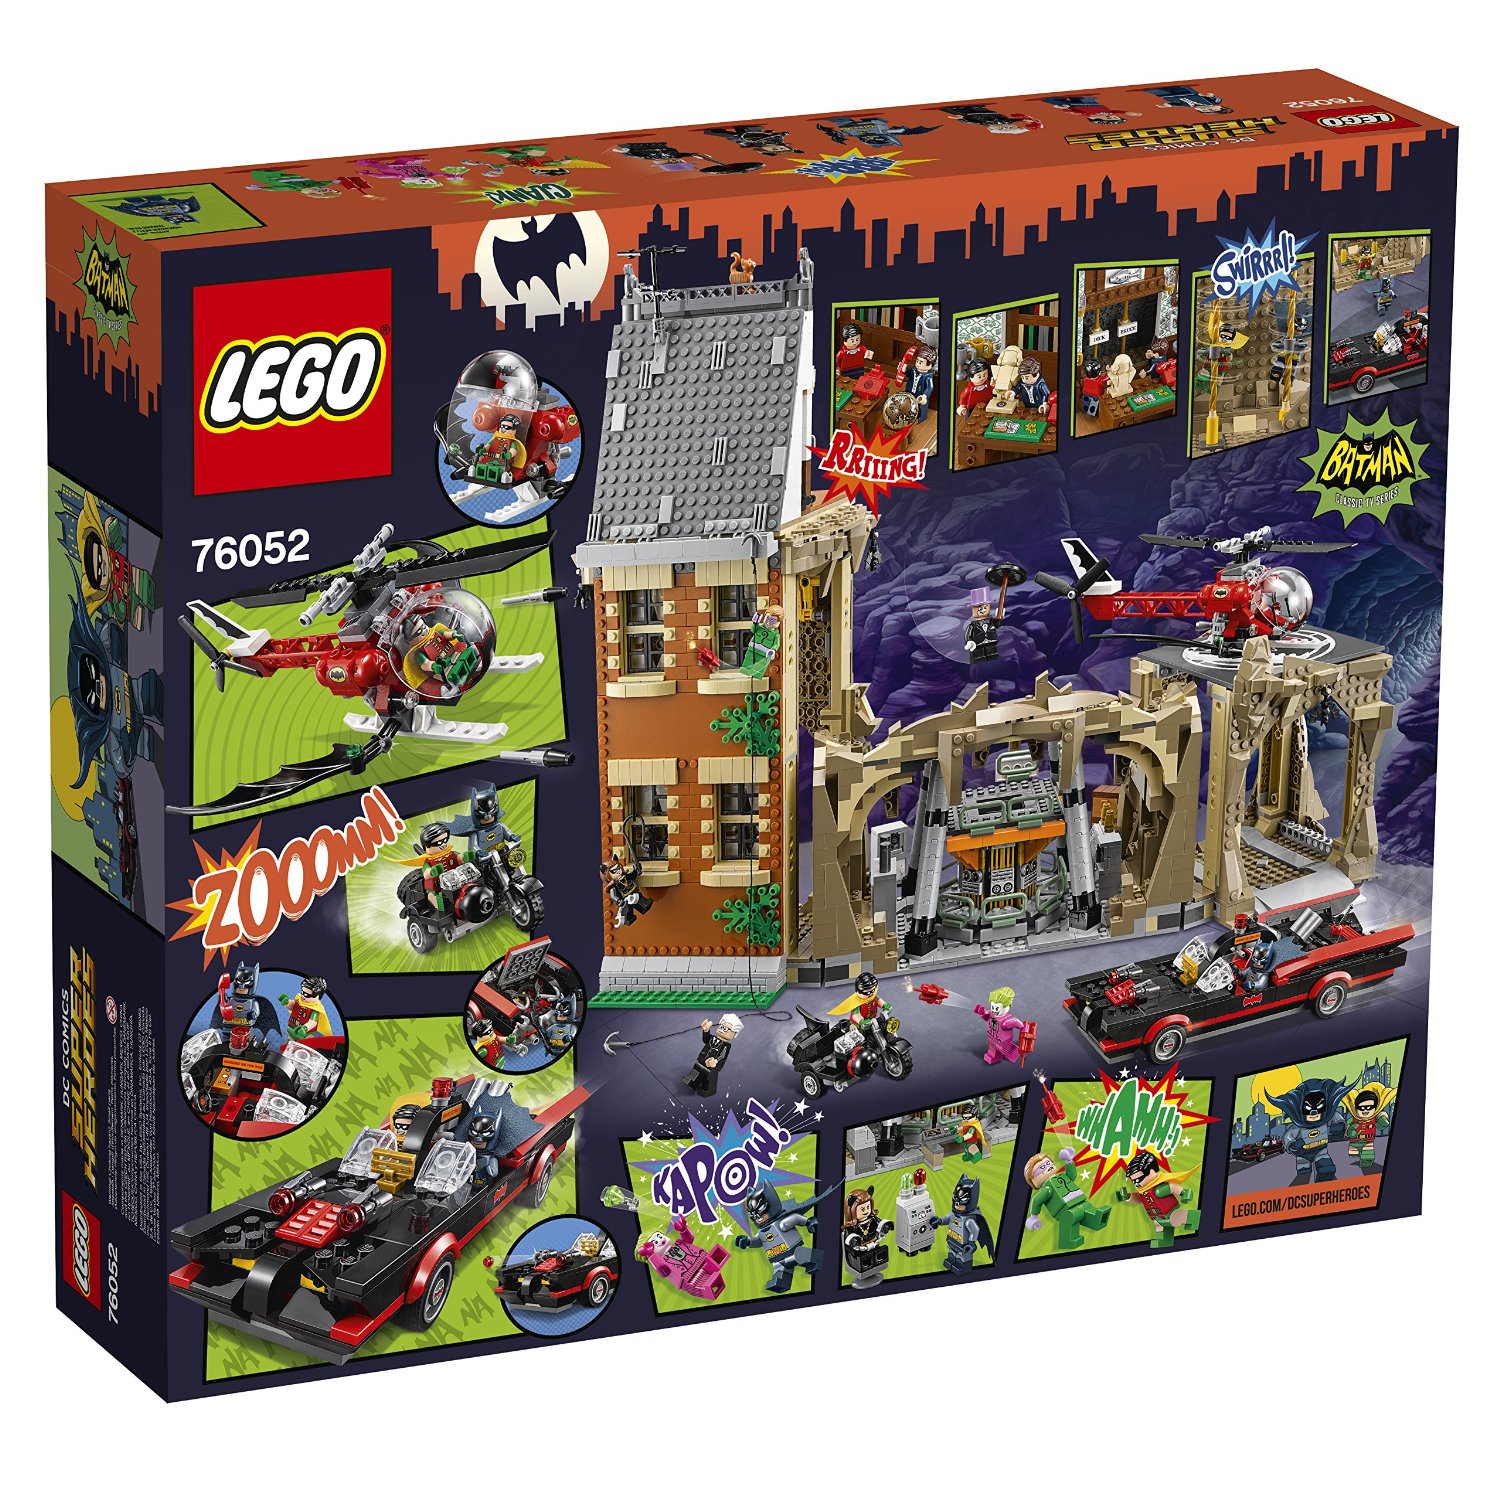 Classic Lego Batman Set